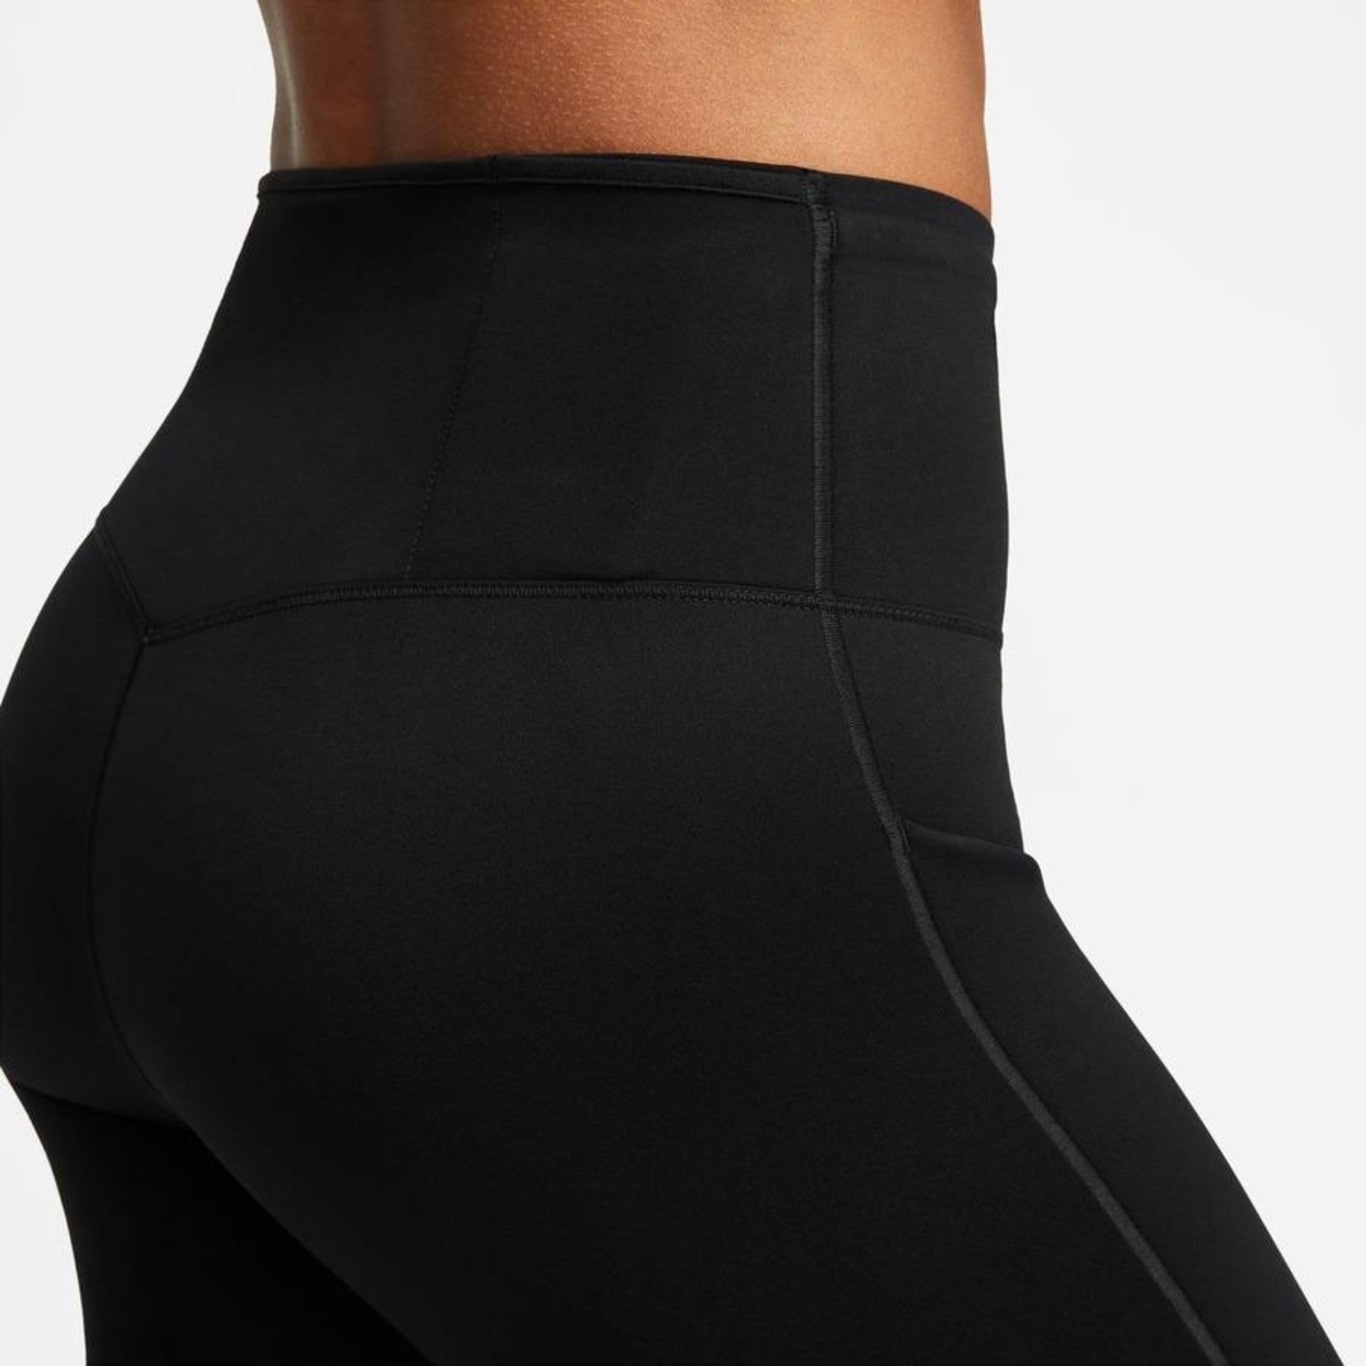 Shorts Nike Dri-FIT Go - Feminino em Promoção